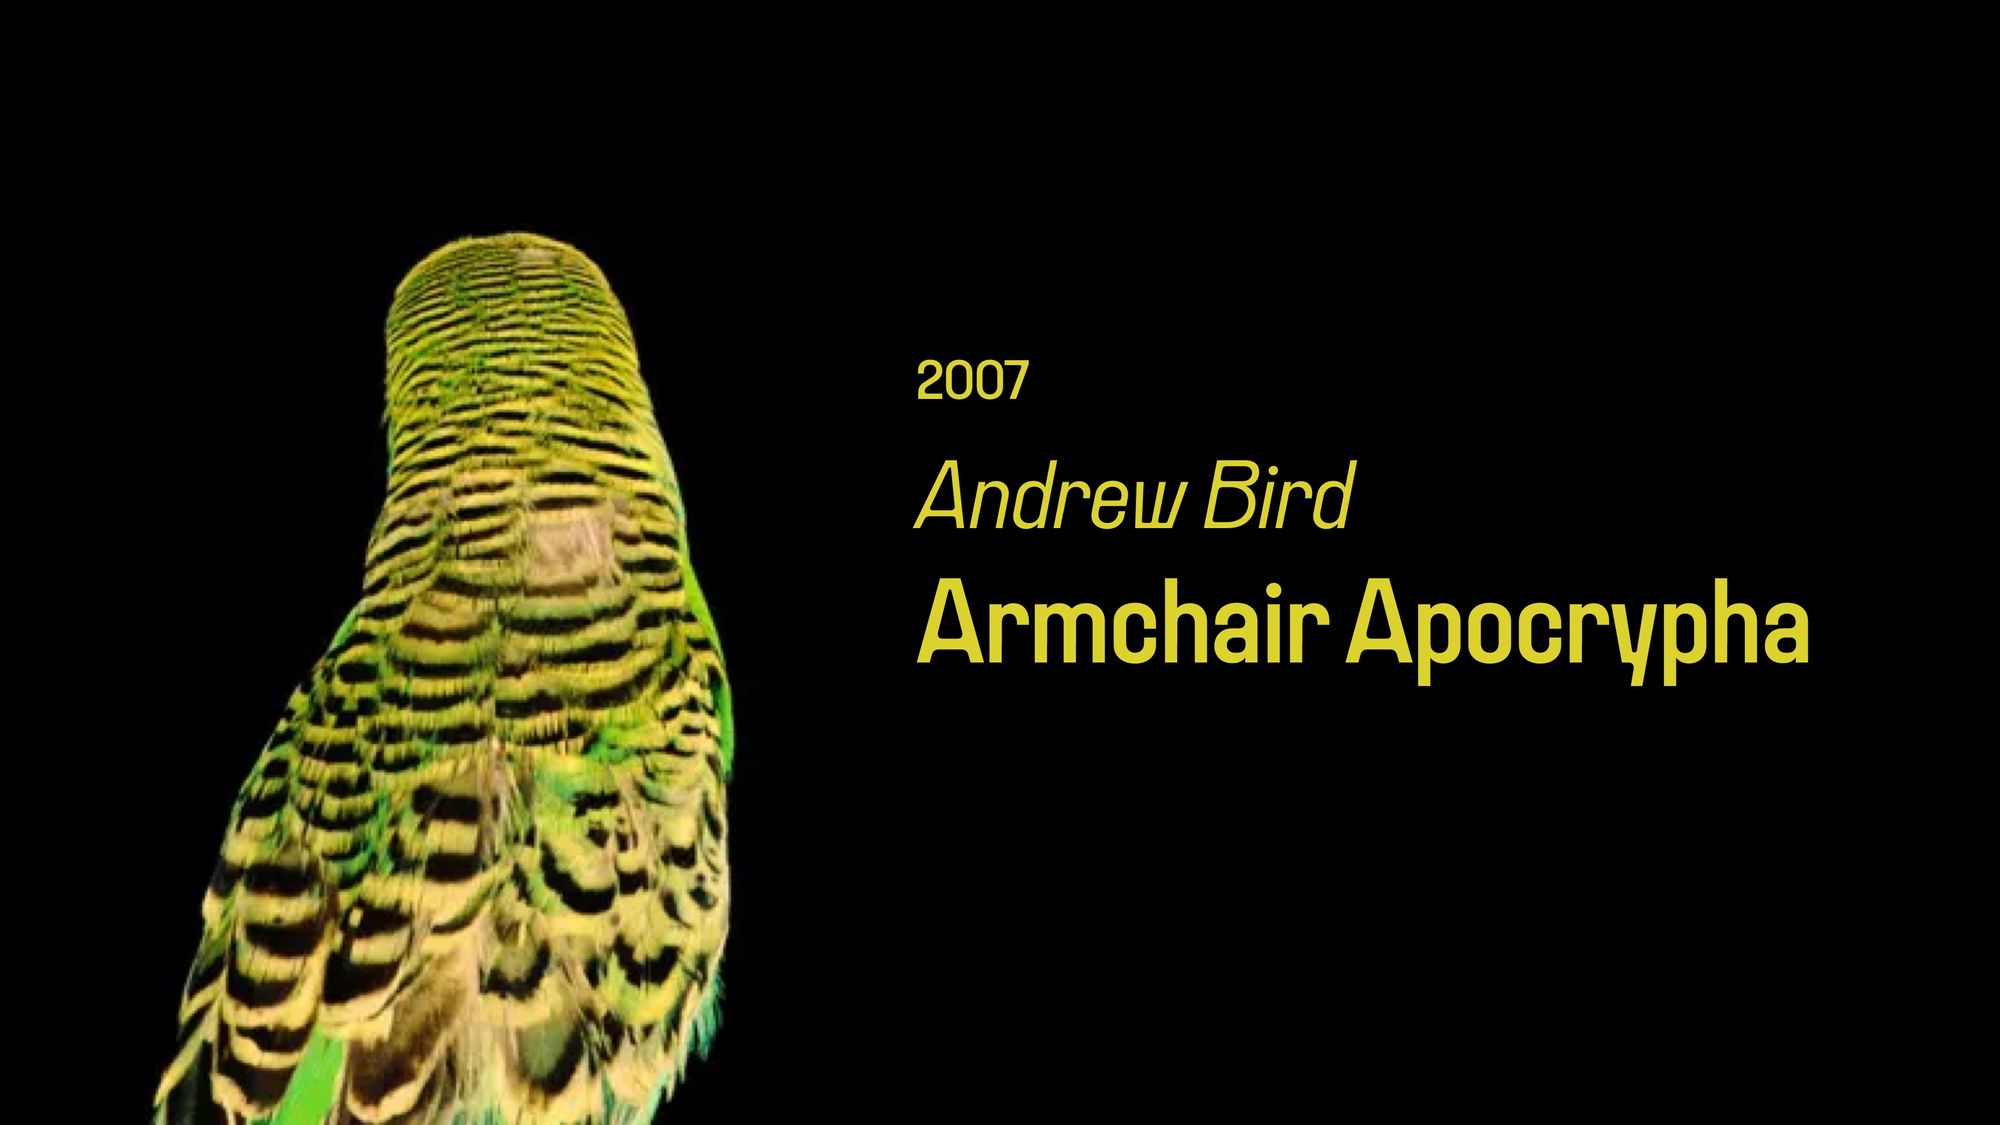 Armchair Apocrypha (365 Albums)